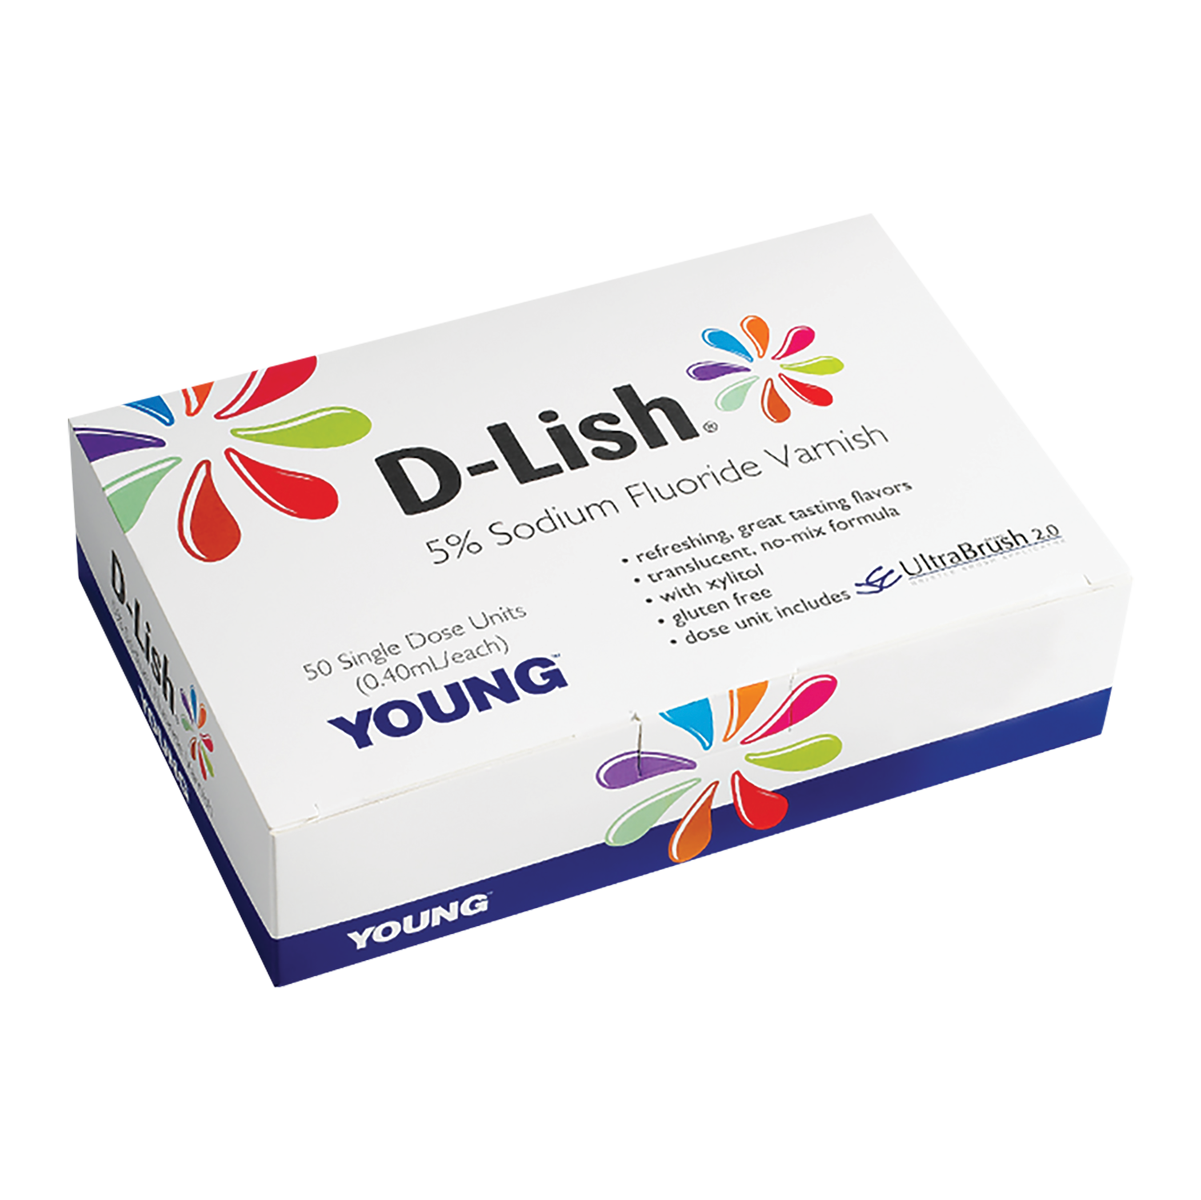 Young D-Lish 5% Sodium Fluoride Varnish